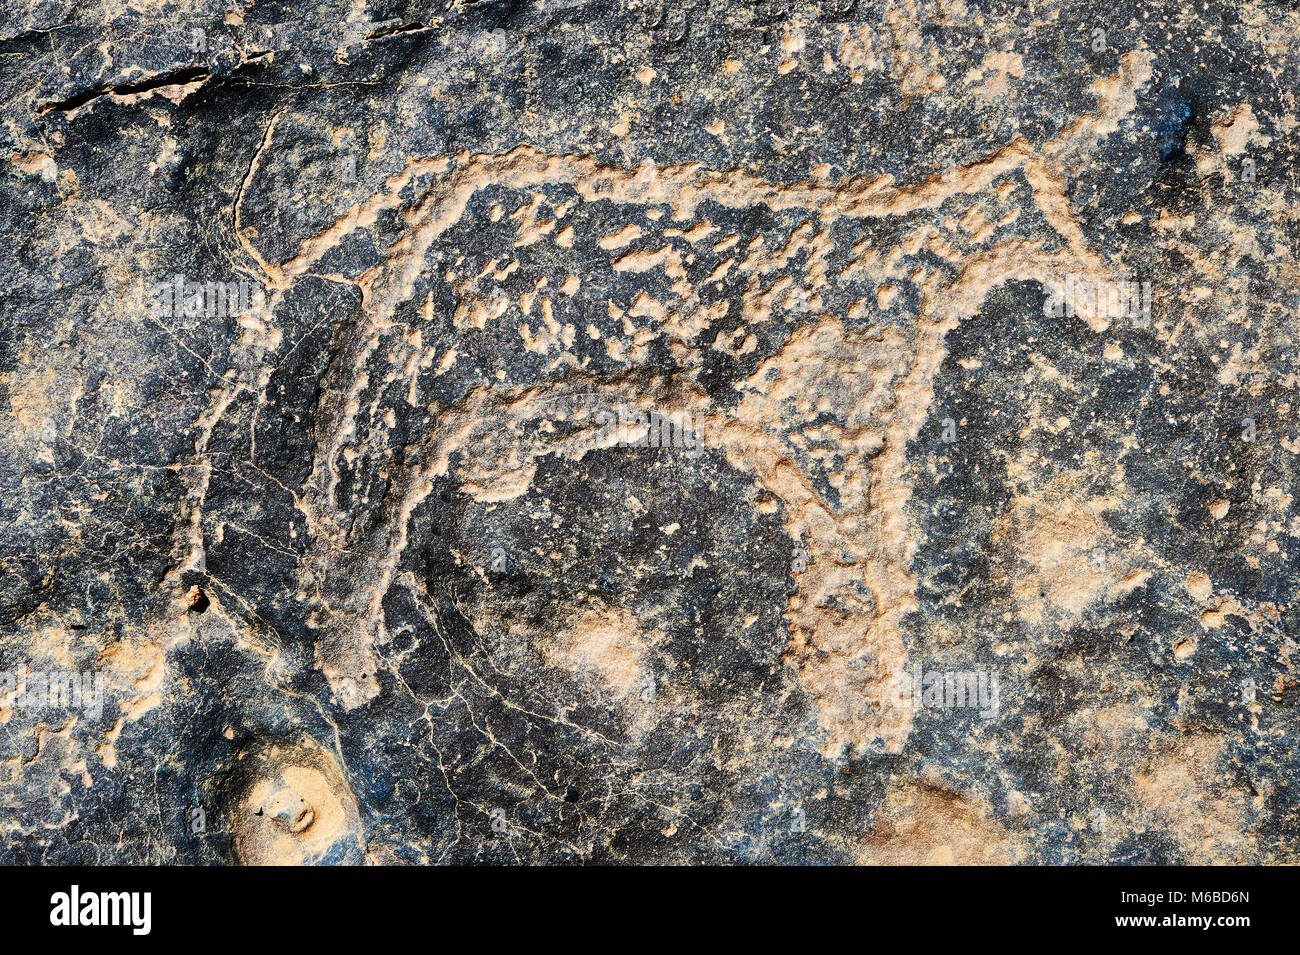 La préhistoire saharienne rock pétroglyphes sculptures art de bovins à partir d'un site 20km à l'est de Taouz, au sud est du Maroc Banque D'Images